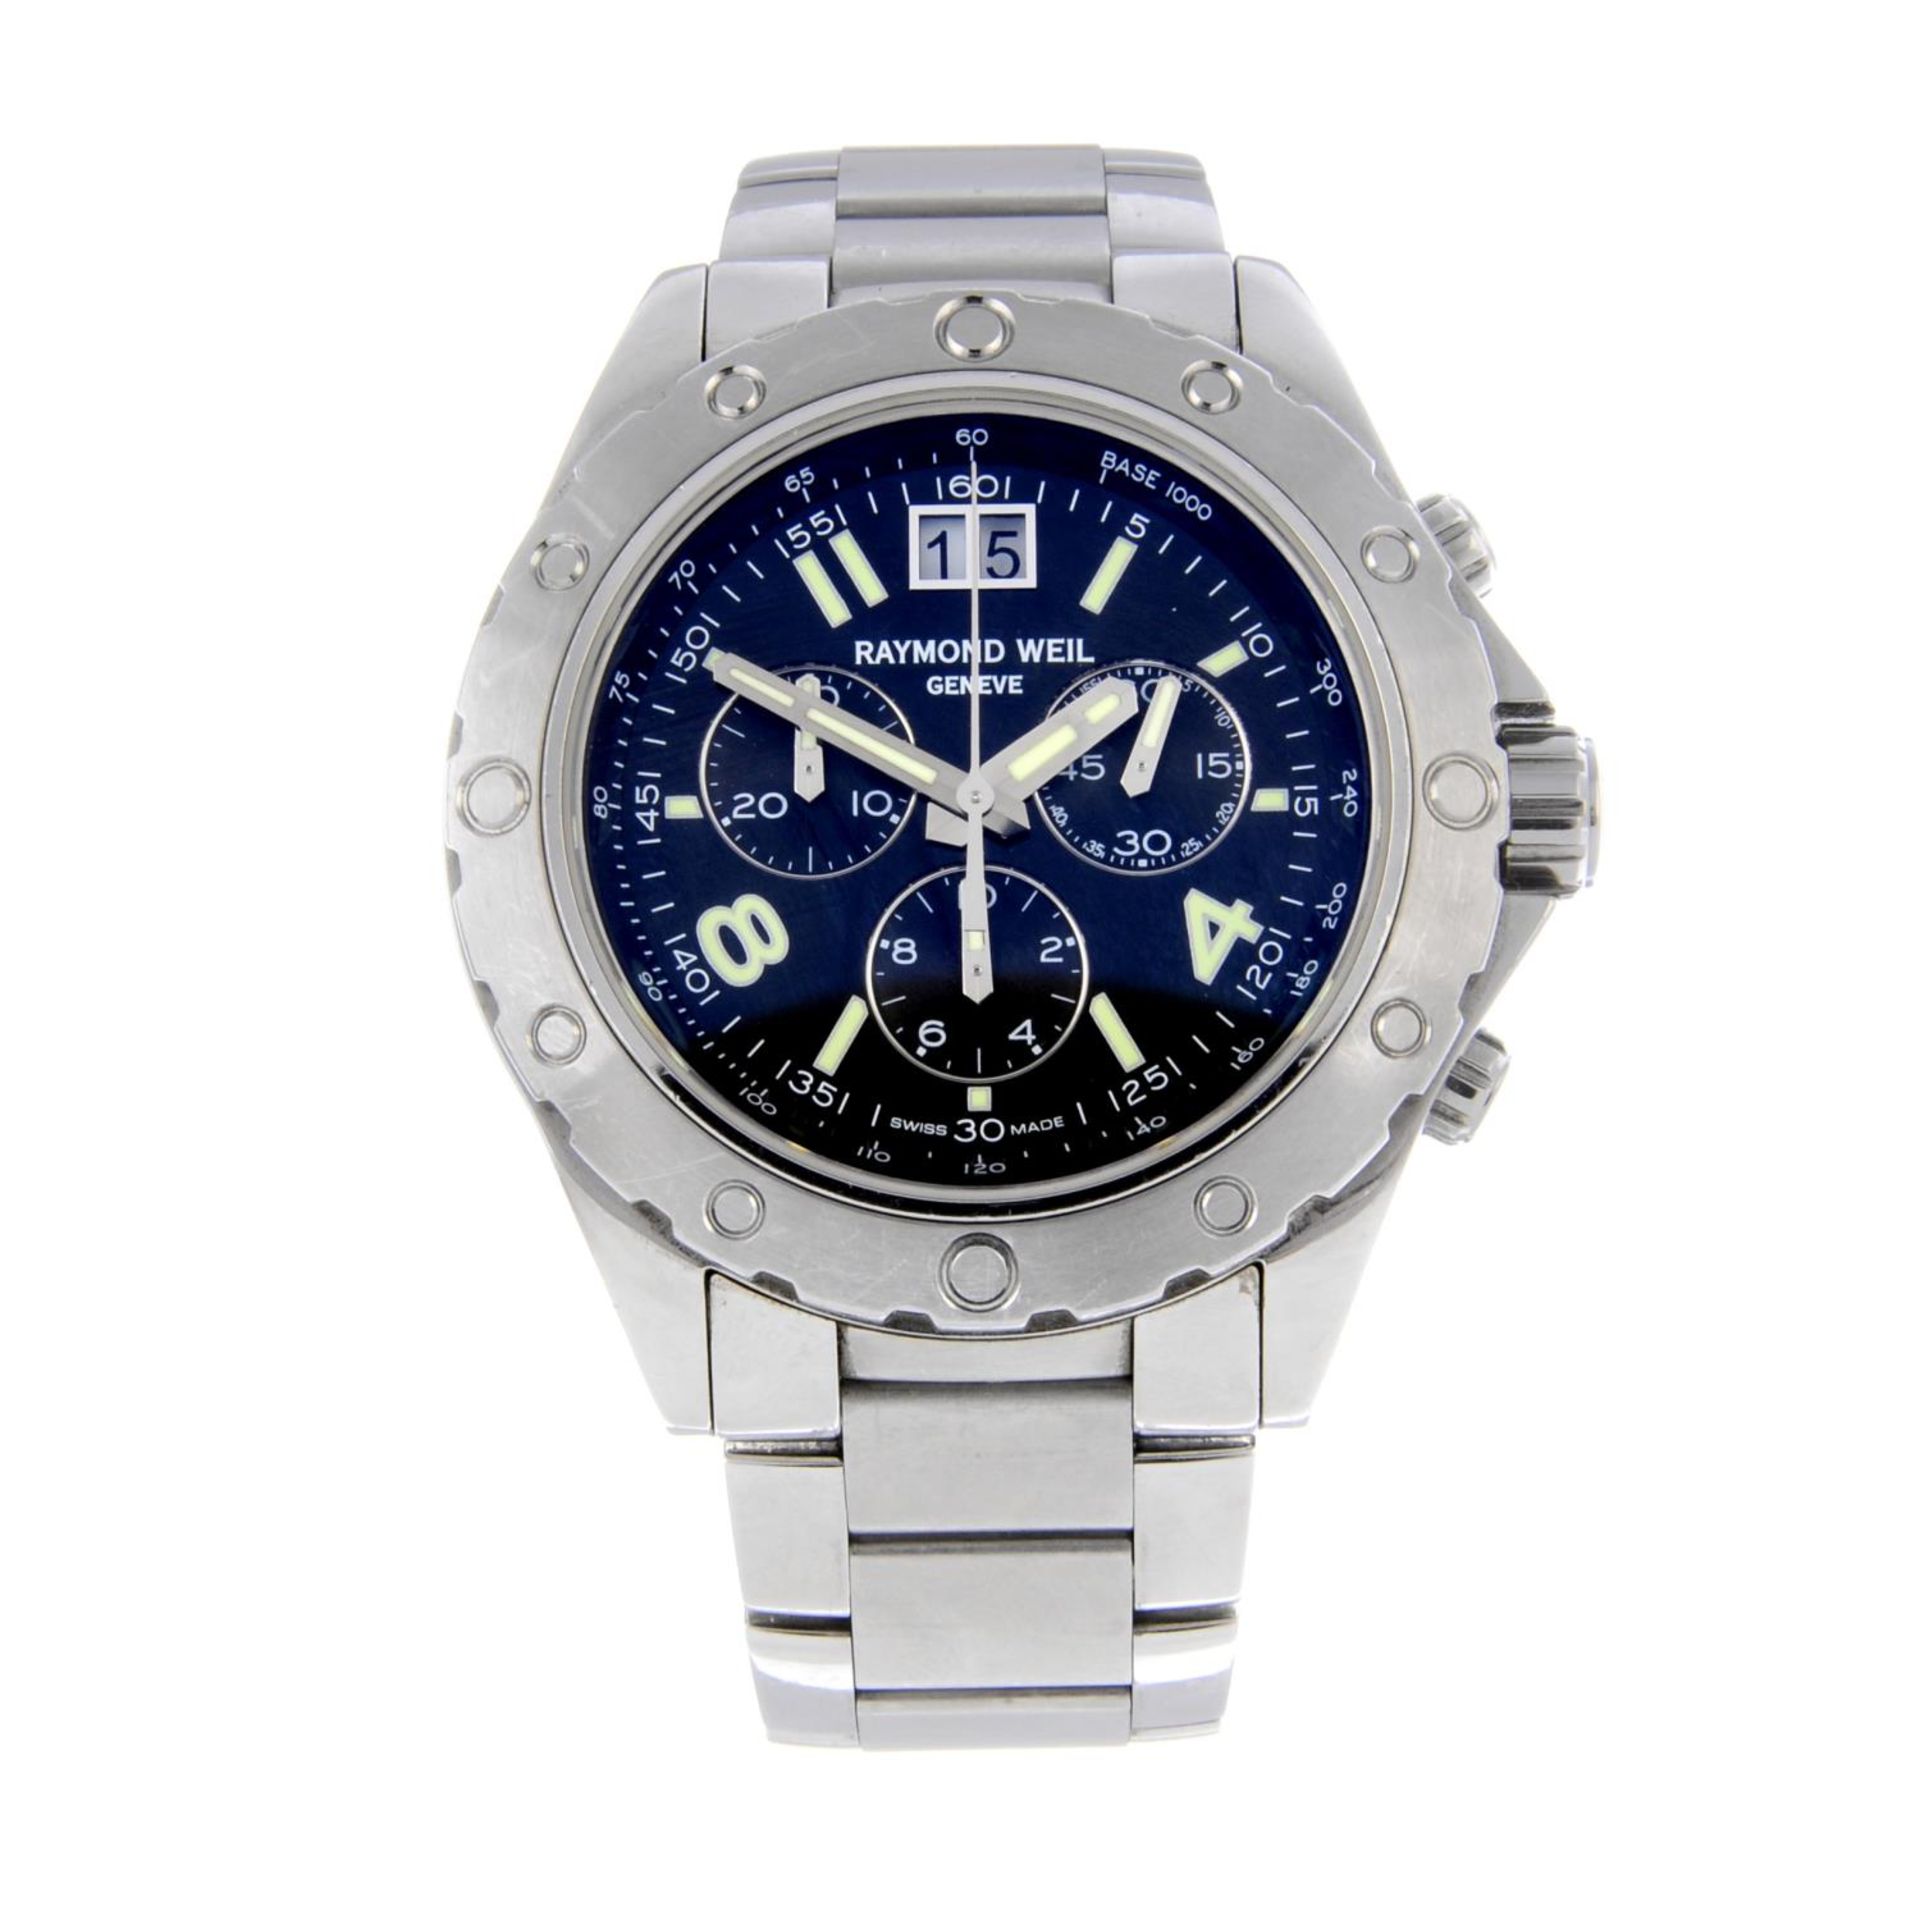 RAYMOND WEIL - a gentleman's Sport chronograph bracelet watch.